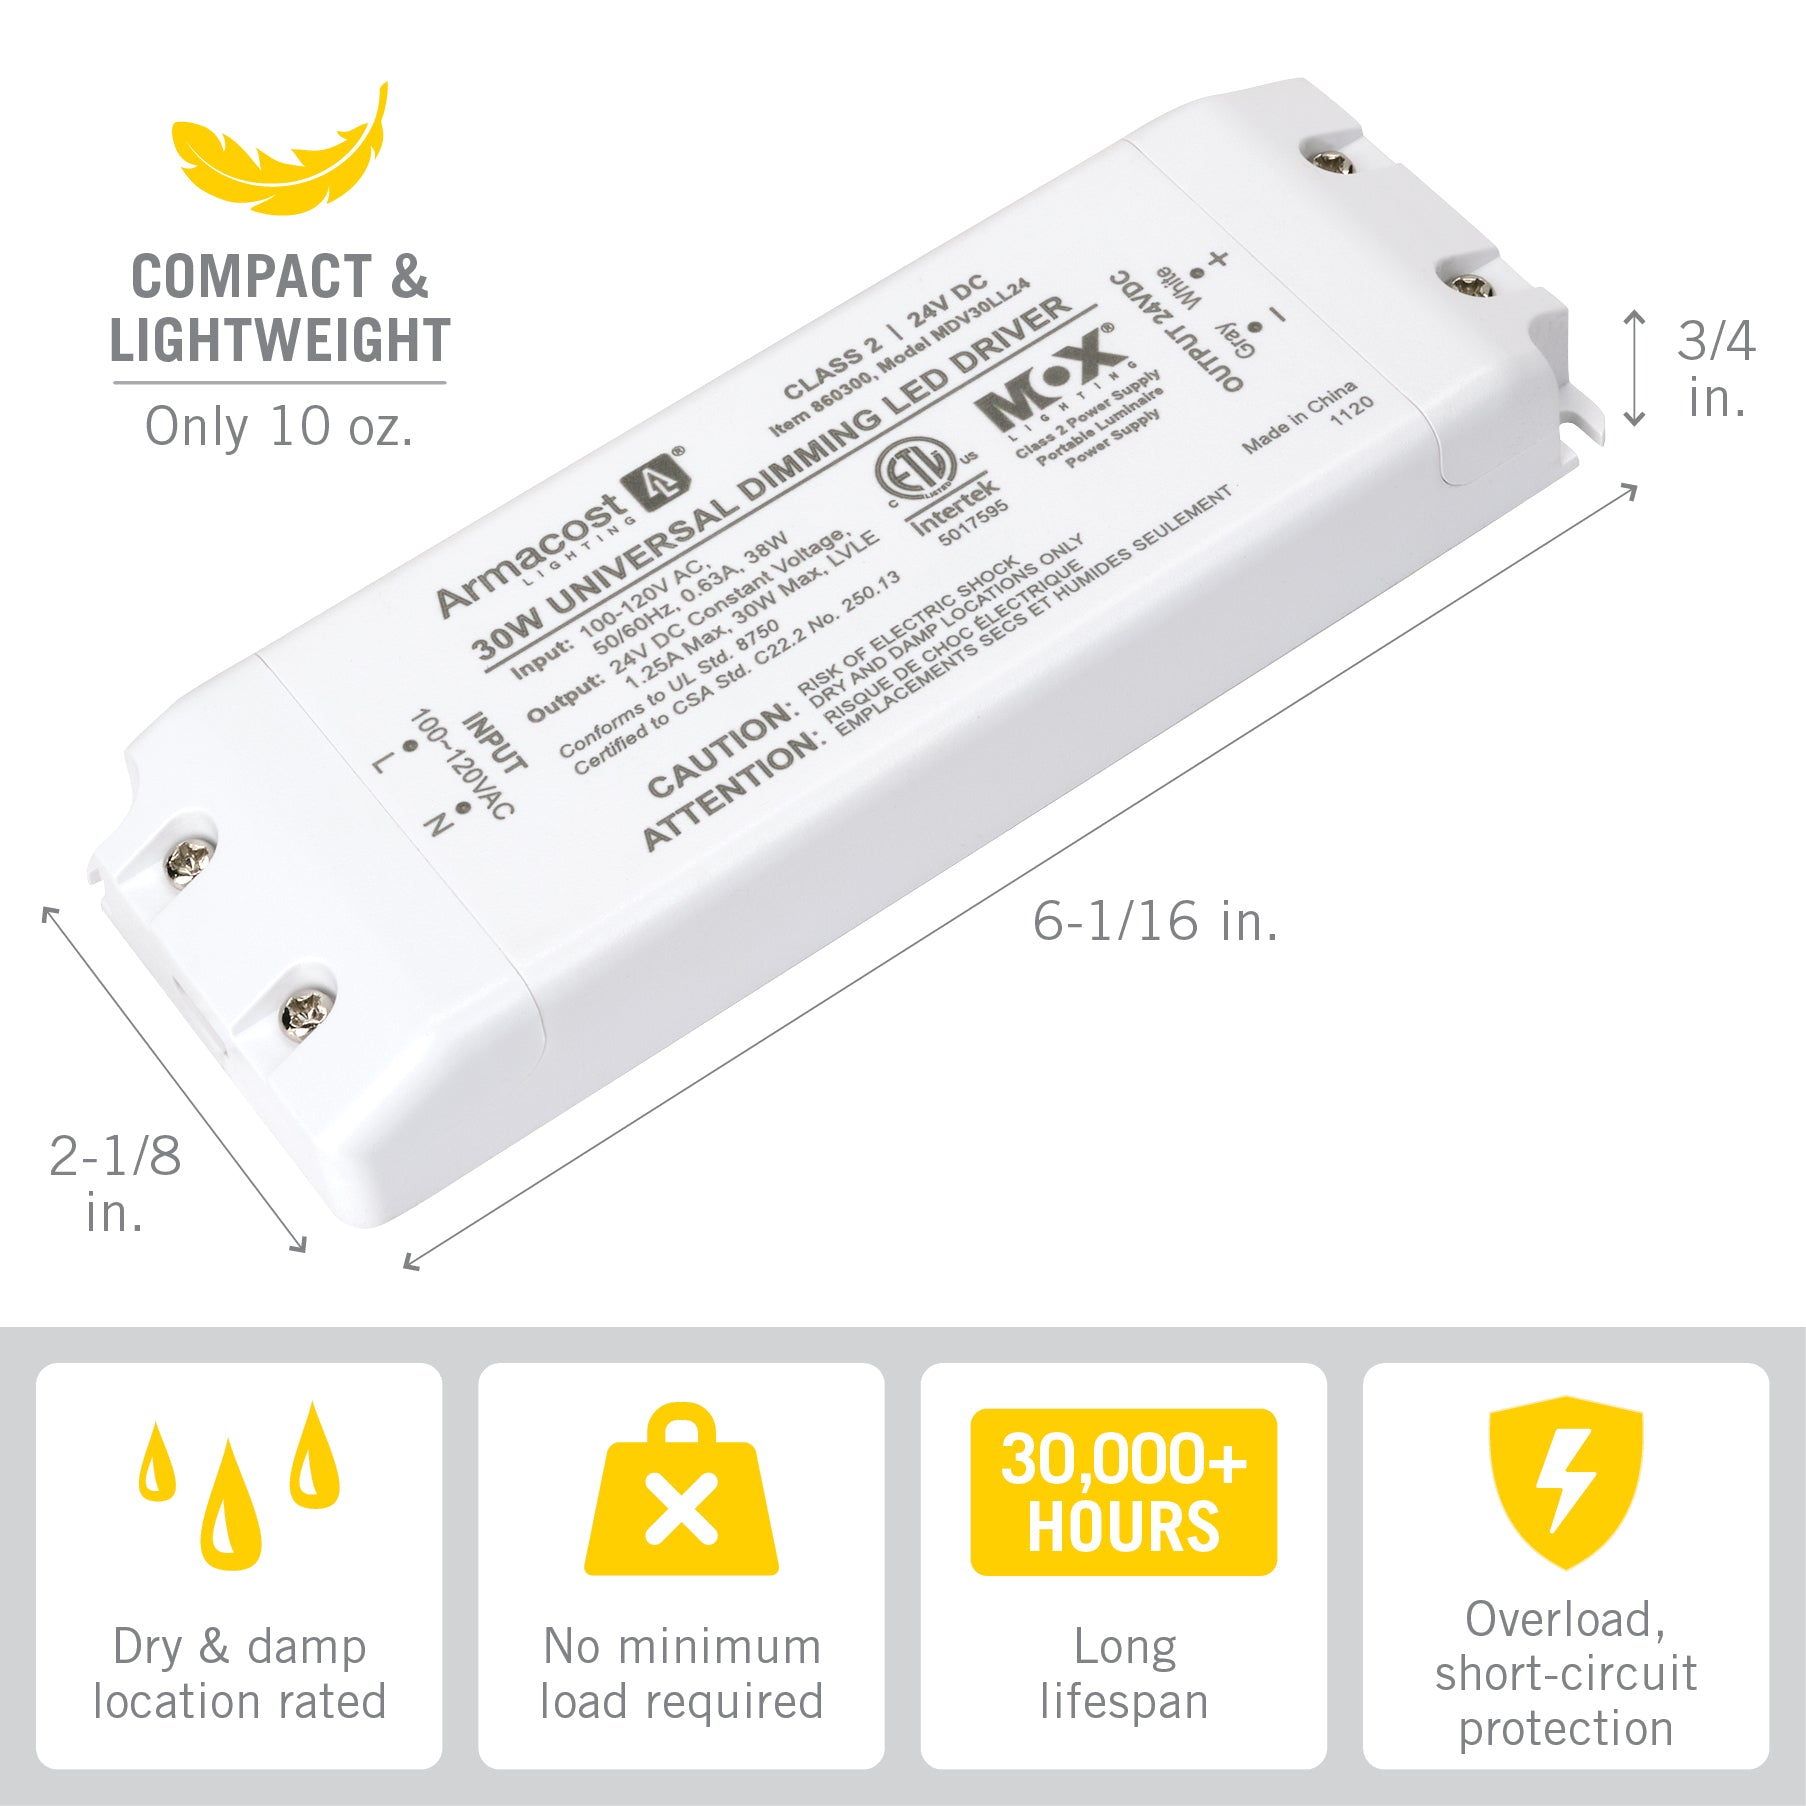 LED Netzteil 6W | 700mA | IP20 | Dimmbar | Magic Leds